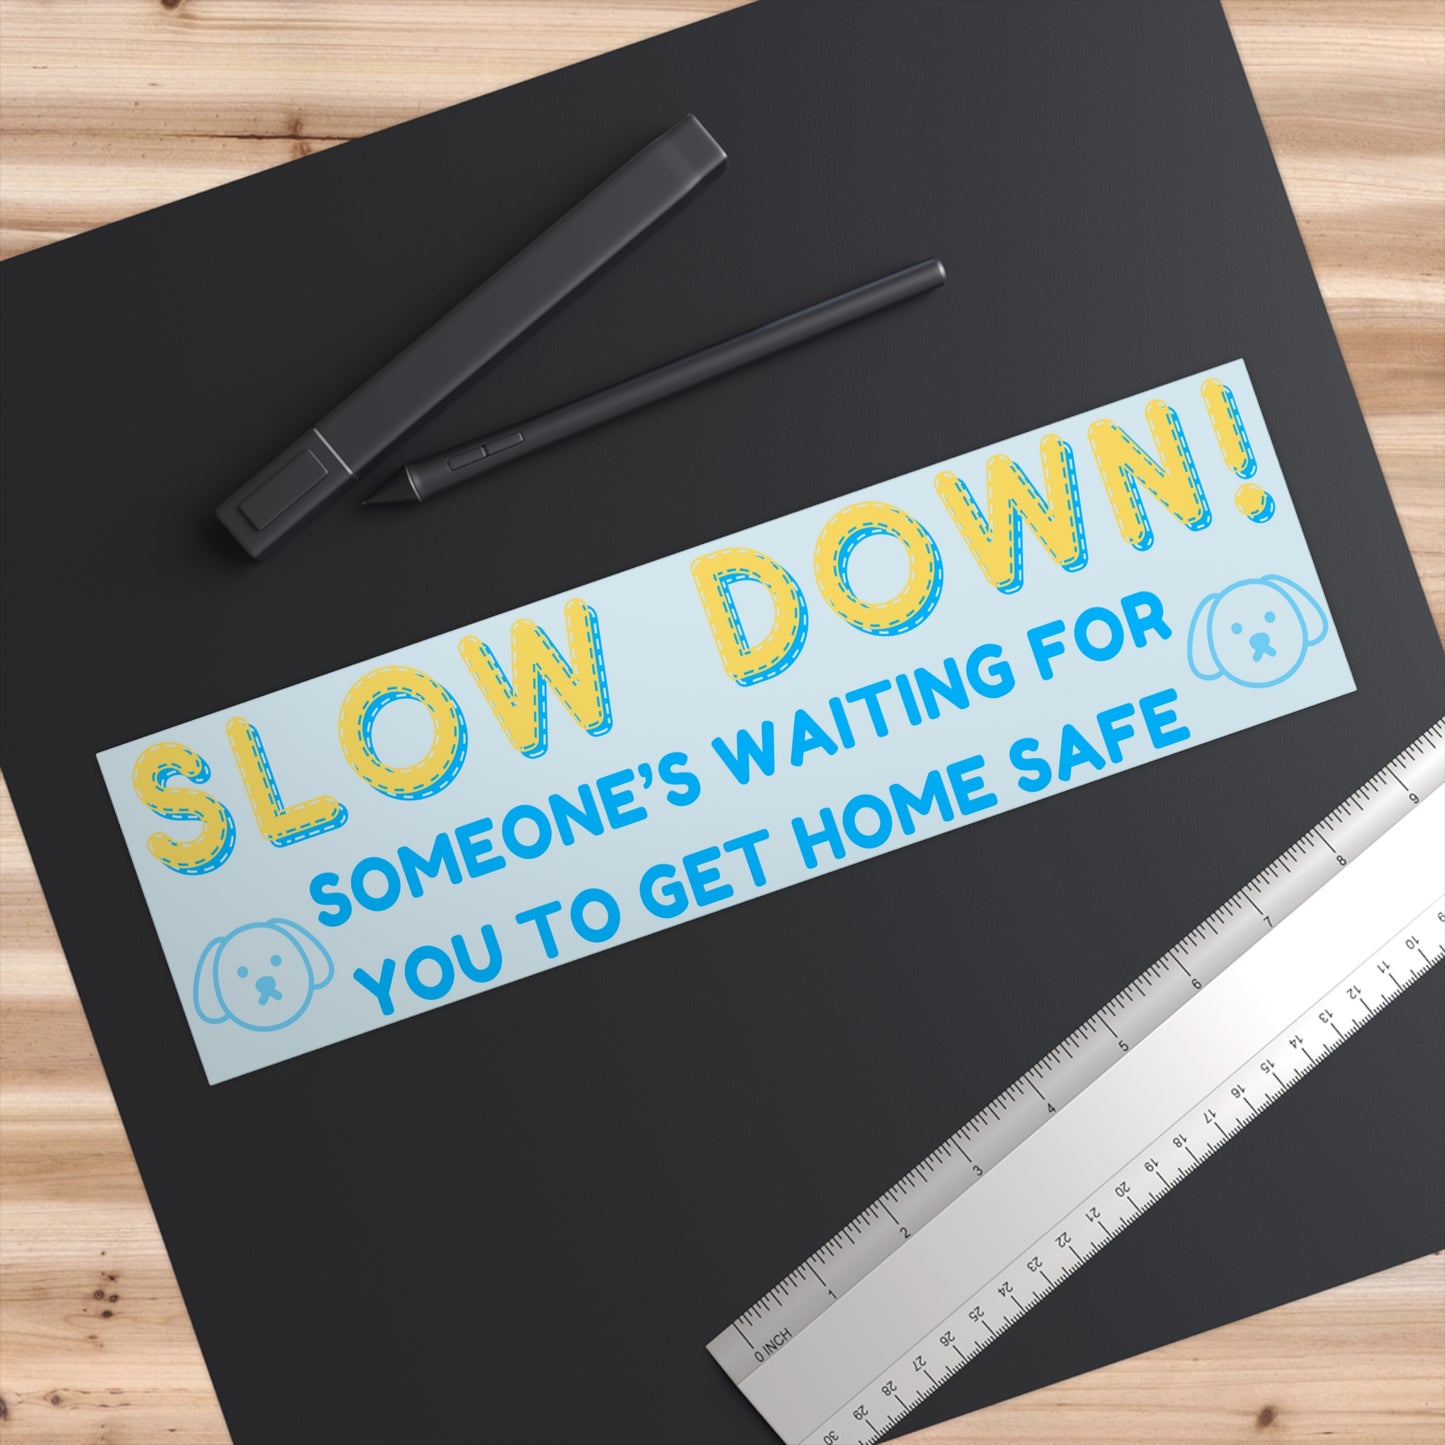 "Slow Down!" (Dog Version) Bumper Sticker